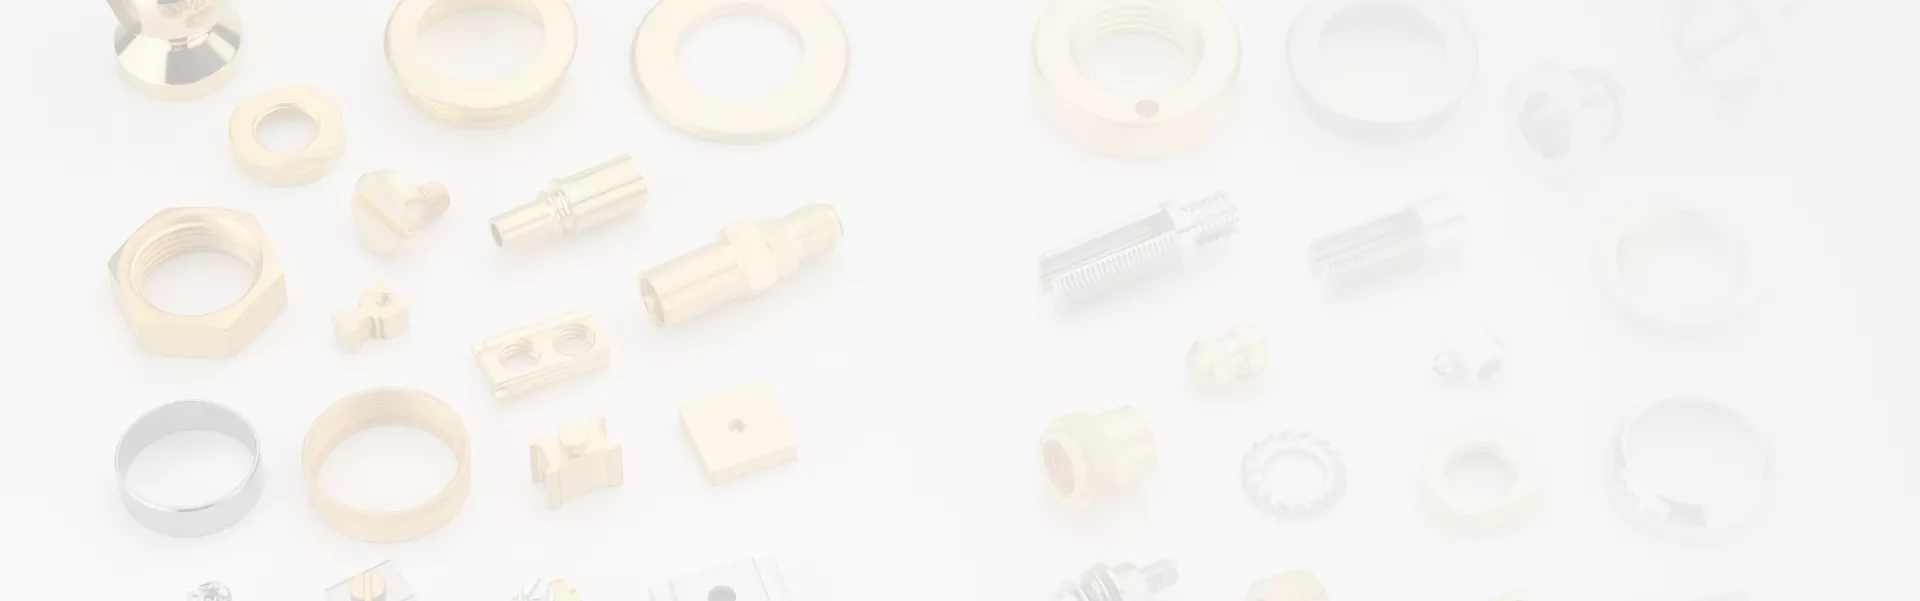 la-based-brass-components-manufacturer